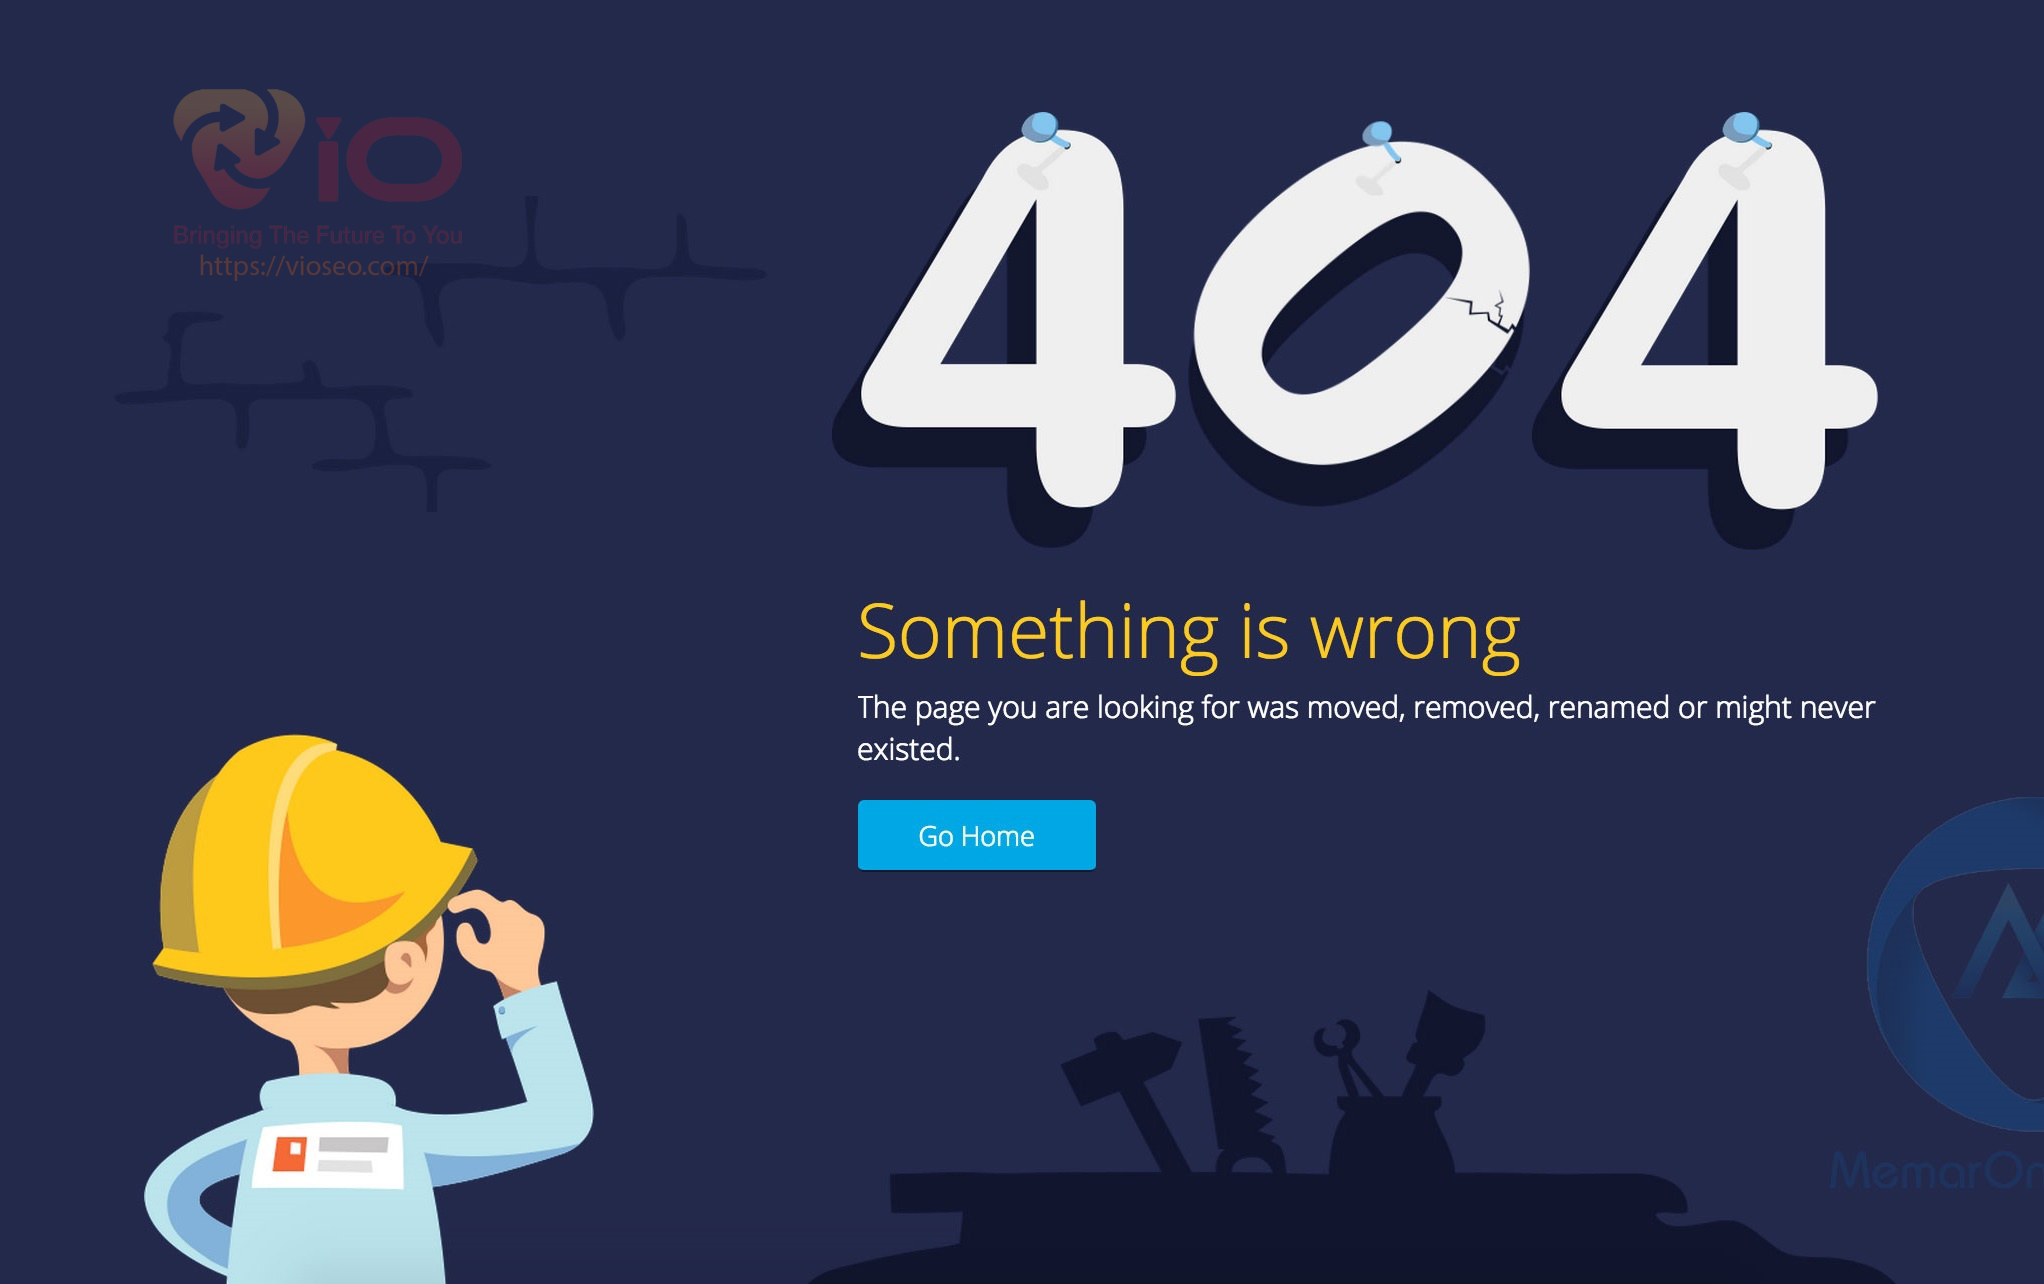 Lỗi 404 cần được khắc phục nhanh chóng để trang web hoạt động trở lại bình thường